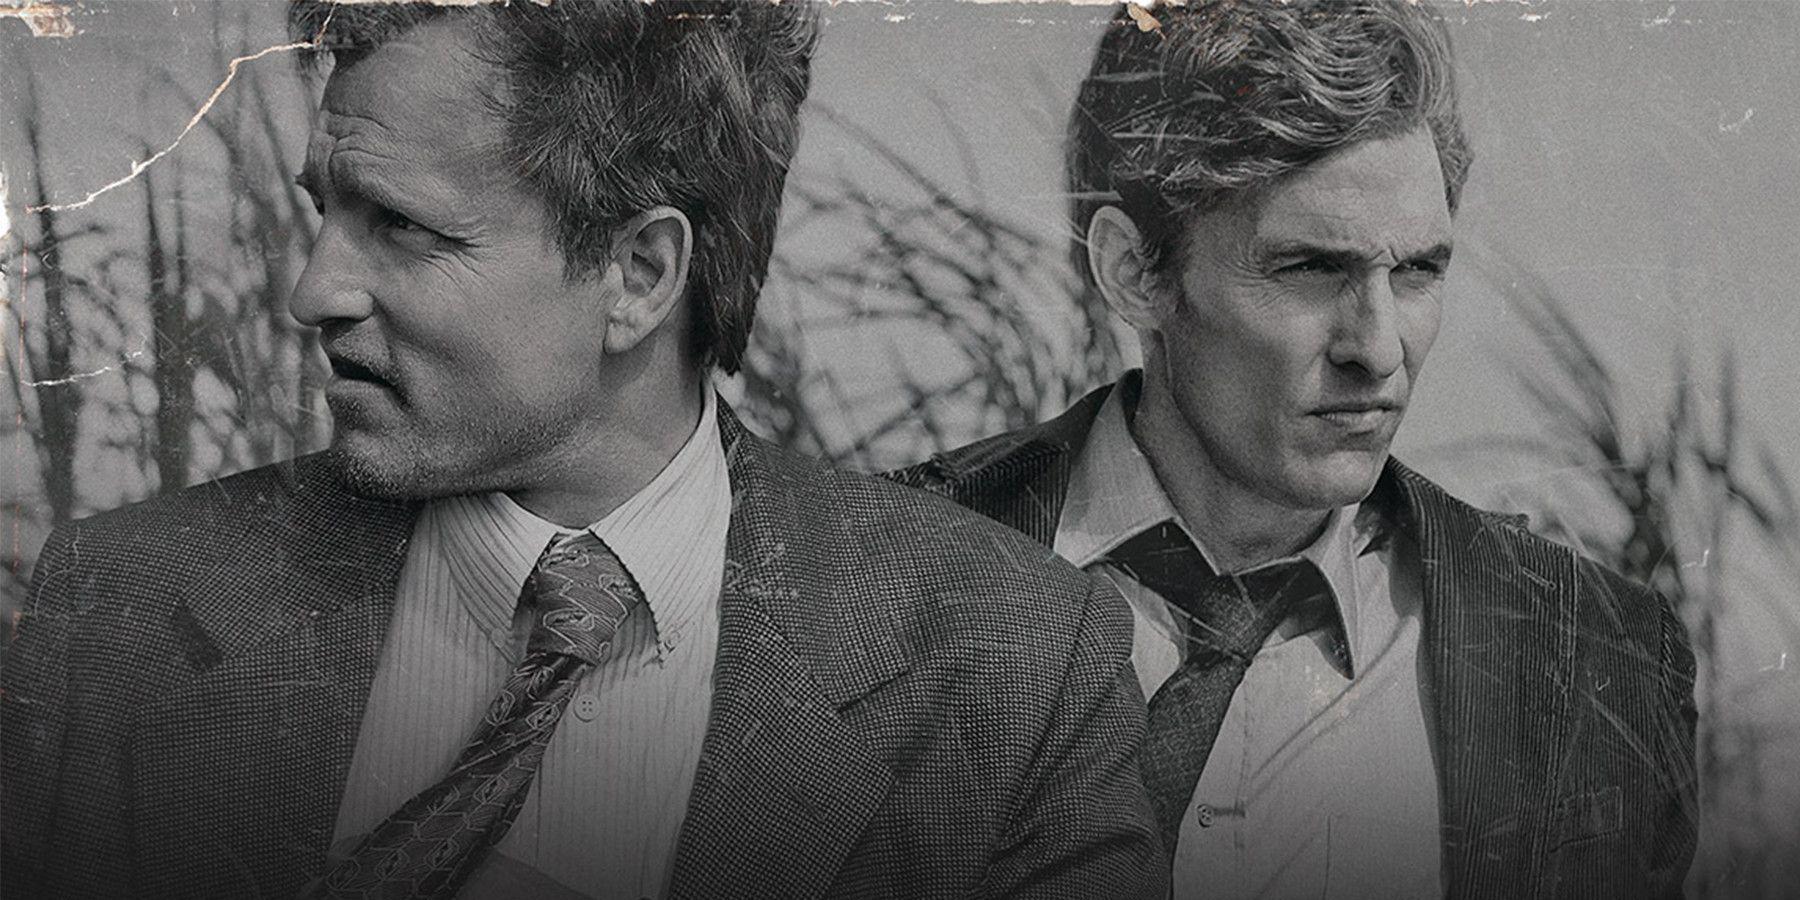 True Detective: As infinitas possibilidades da 4ª temporada